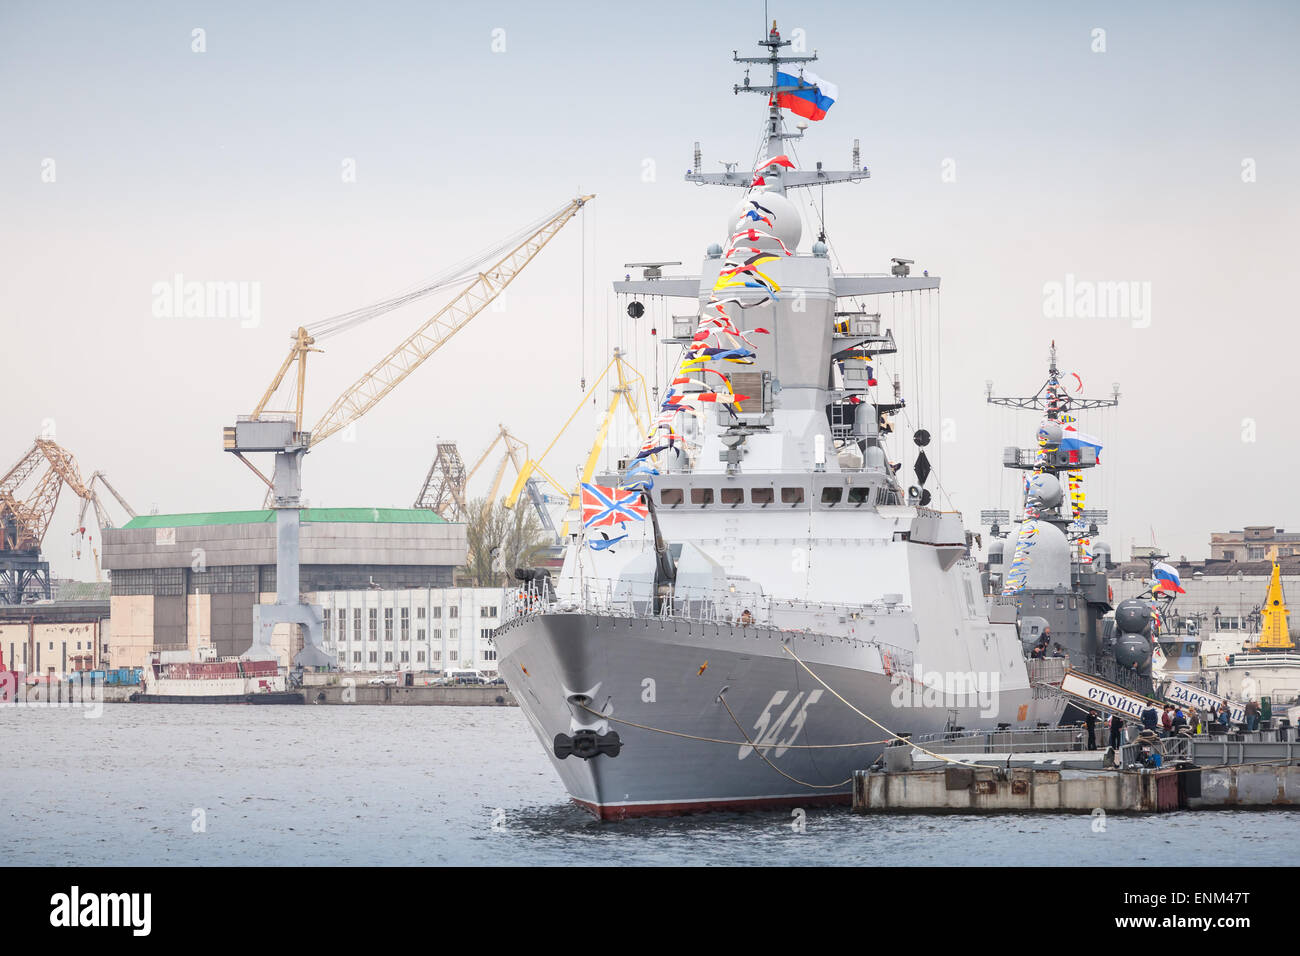 Saint-pétersbourg, Russie - 7 mai 2015 : navire de guerre Stoikiy sur la rivière Neva en prévision de la parade militaire des forces navales Banque D'Images